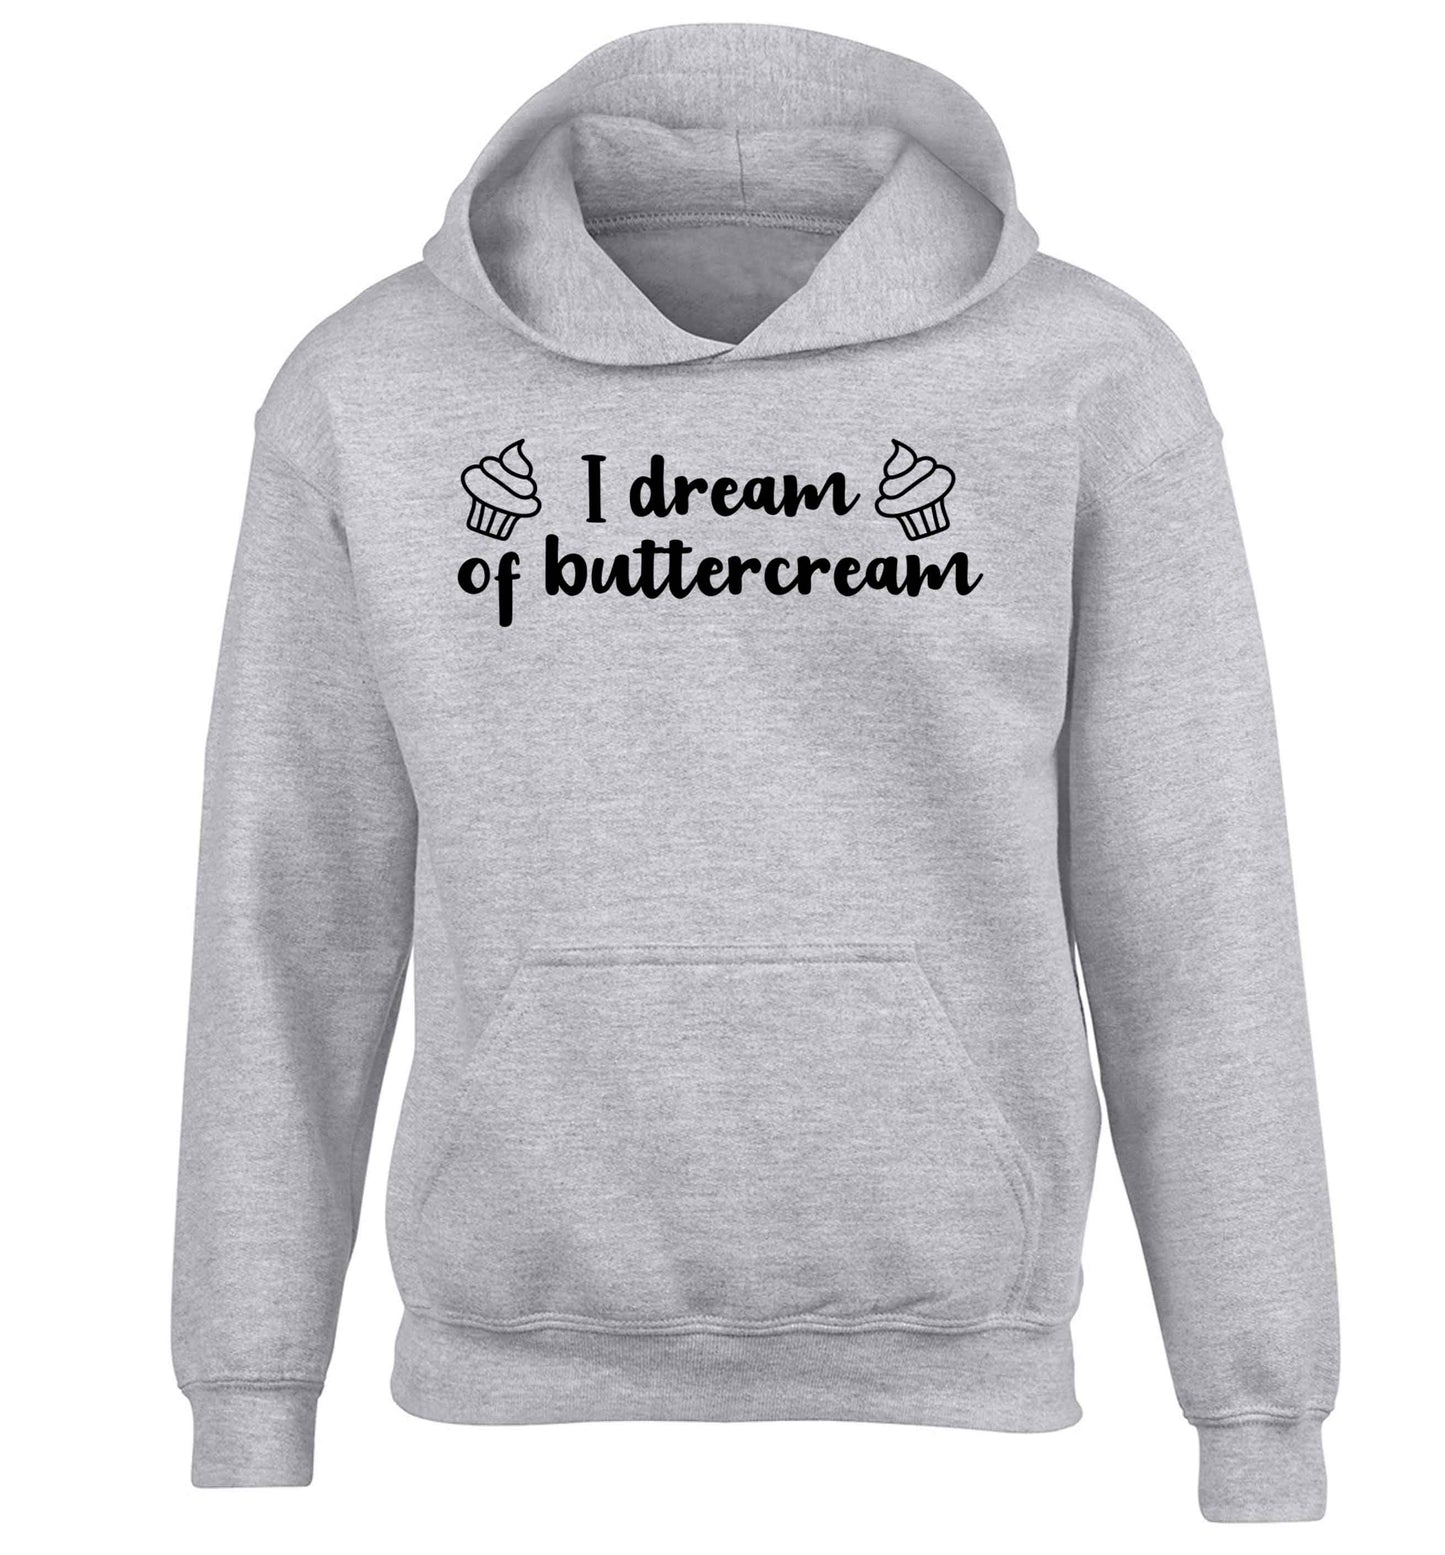 I dream of buttercream children's grey hoodie 12-13 Years